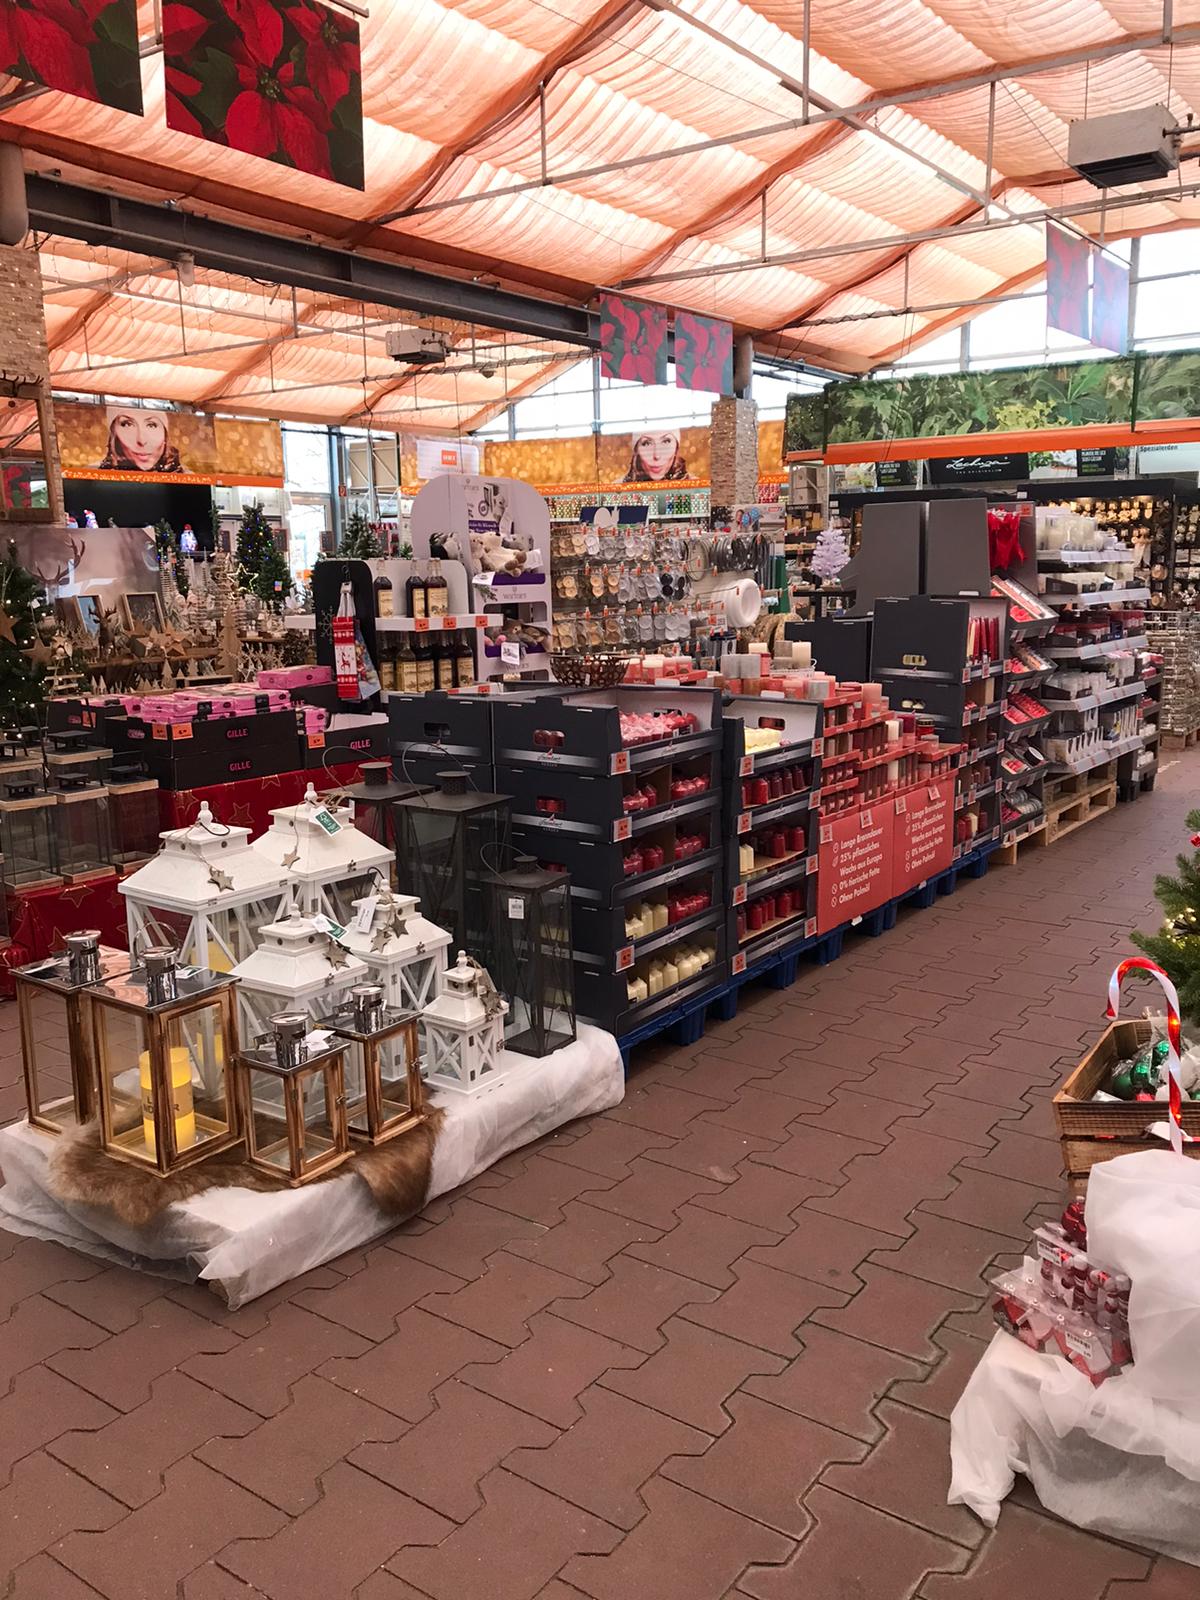 - OBI Baumarkt Weißenburg (DIY)- 7.500m² Verkaufsfläche / Sales Area- Abteilung: Weihnachtsmarkt Innengarten